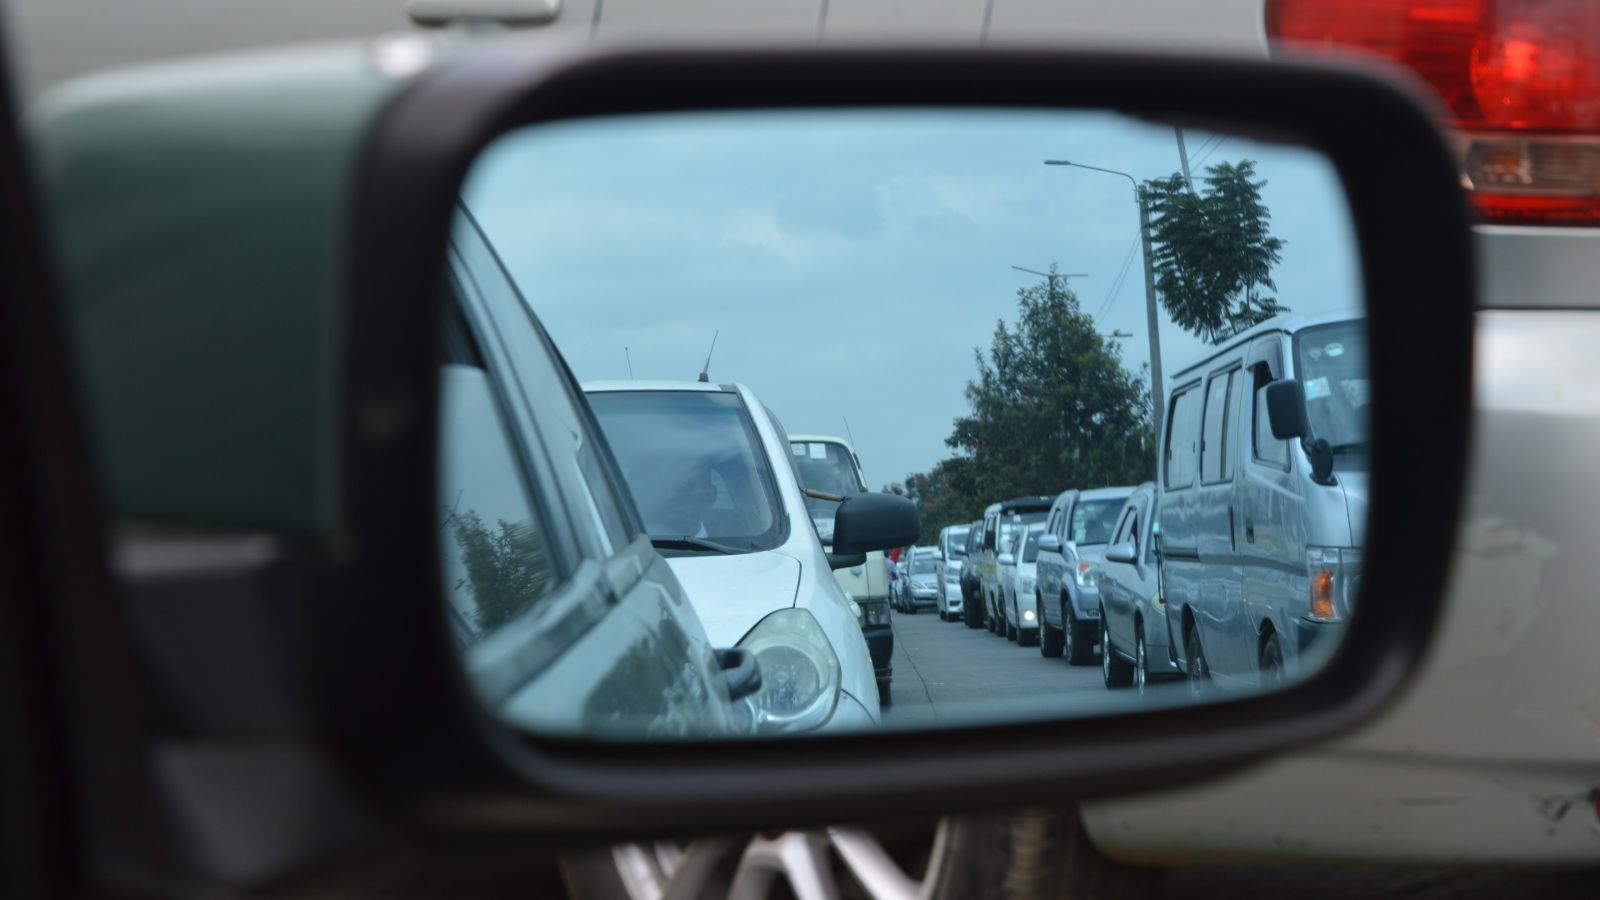 Traffic jam seen through car mirror